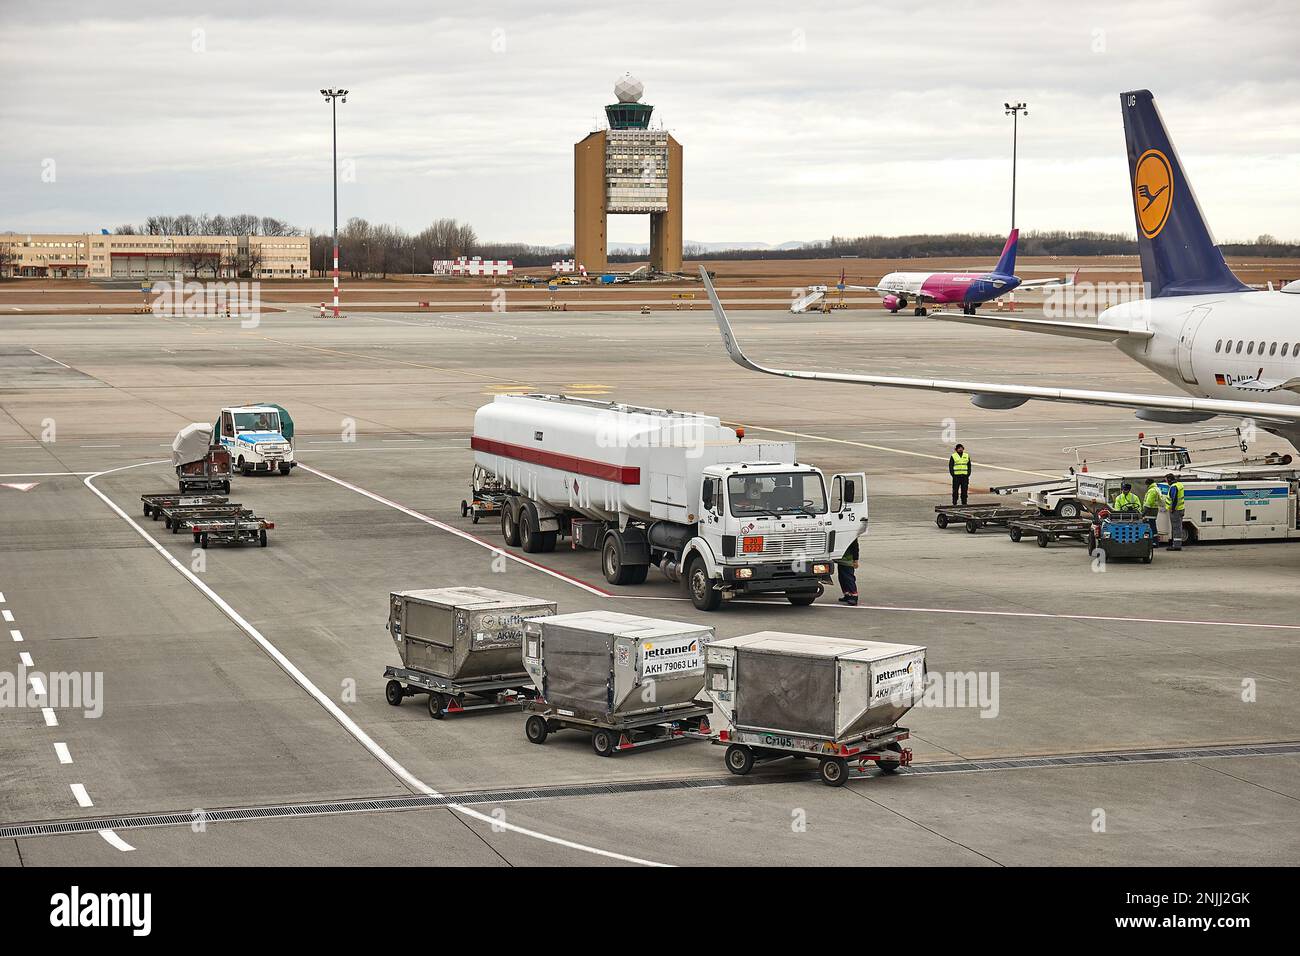 Camions à réservoir de carburant à un aéroport avec carburant à réaction Banque D'Images